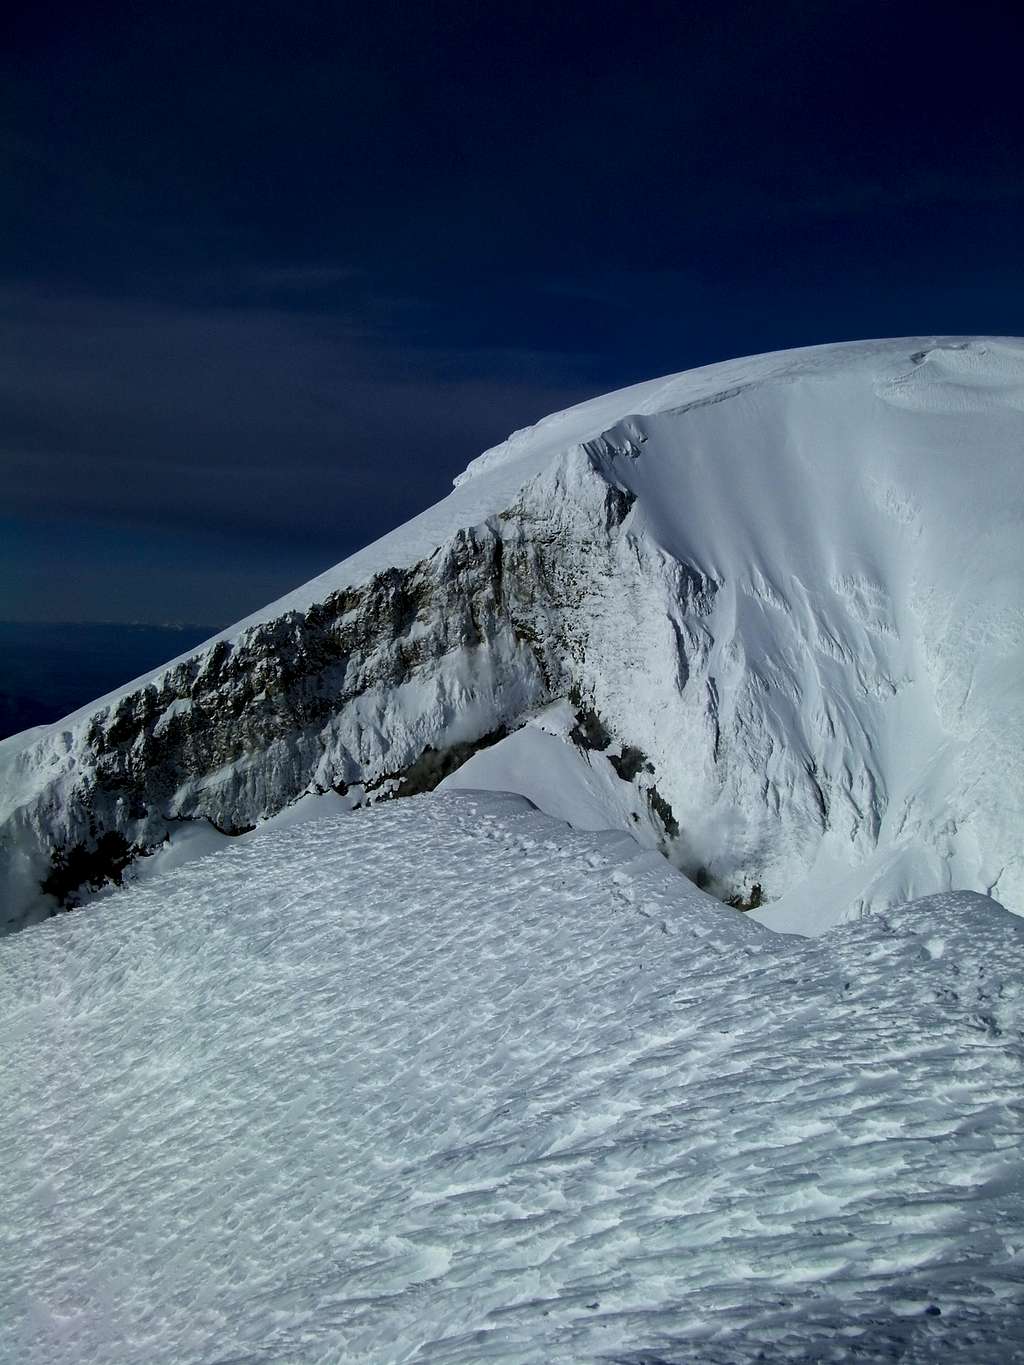 Mount Baker's Summit